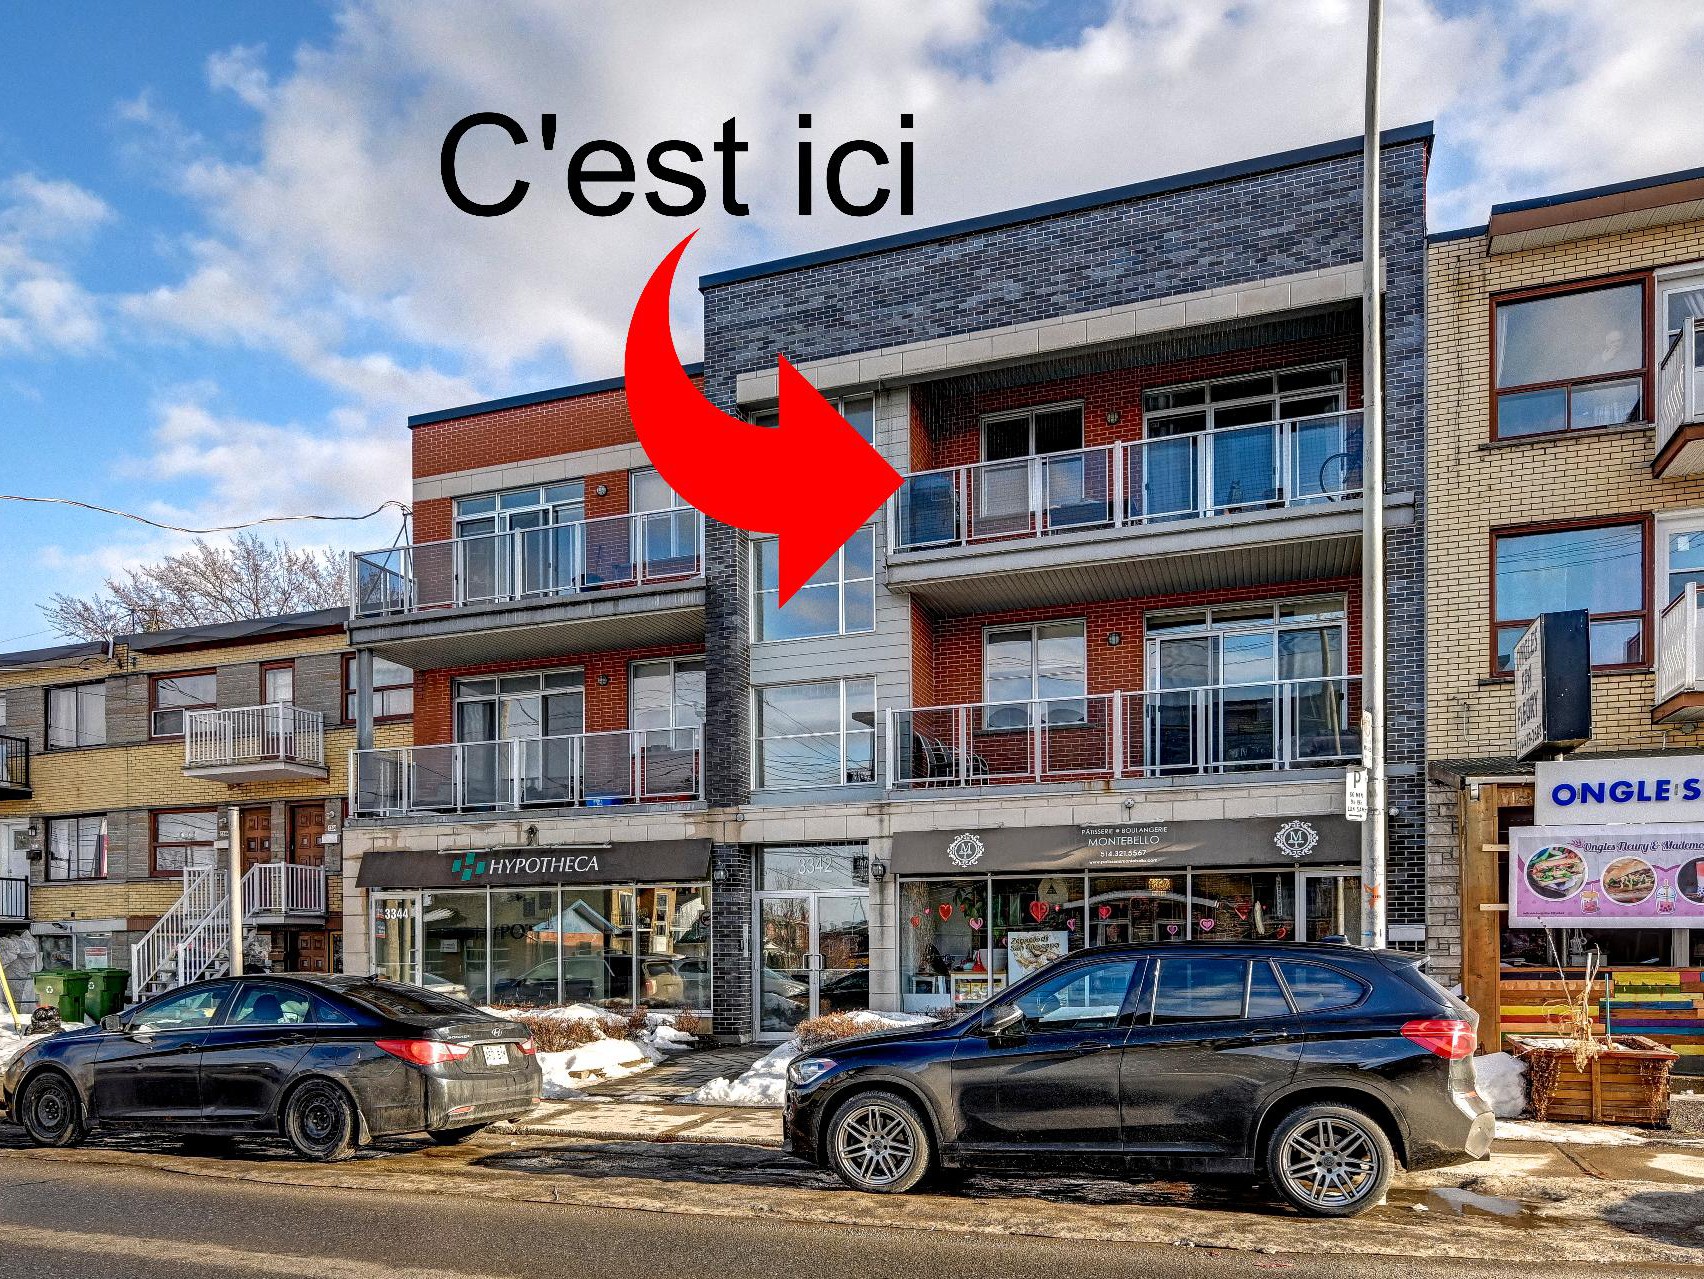 Appartement / Condo à vendre, Montréal-Nord